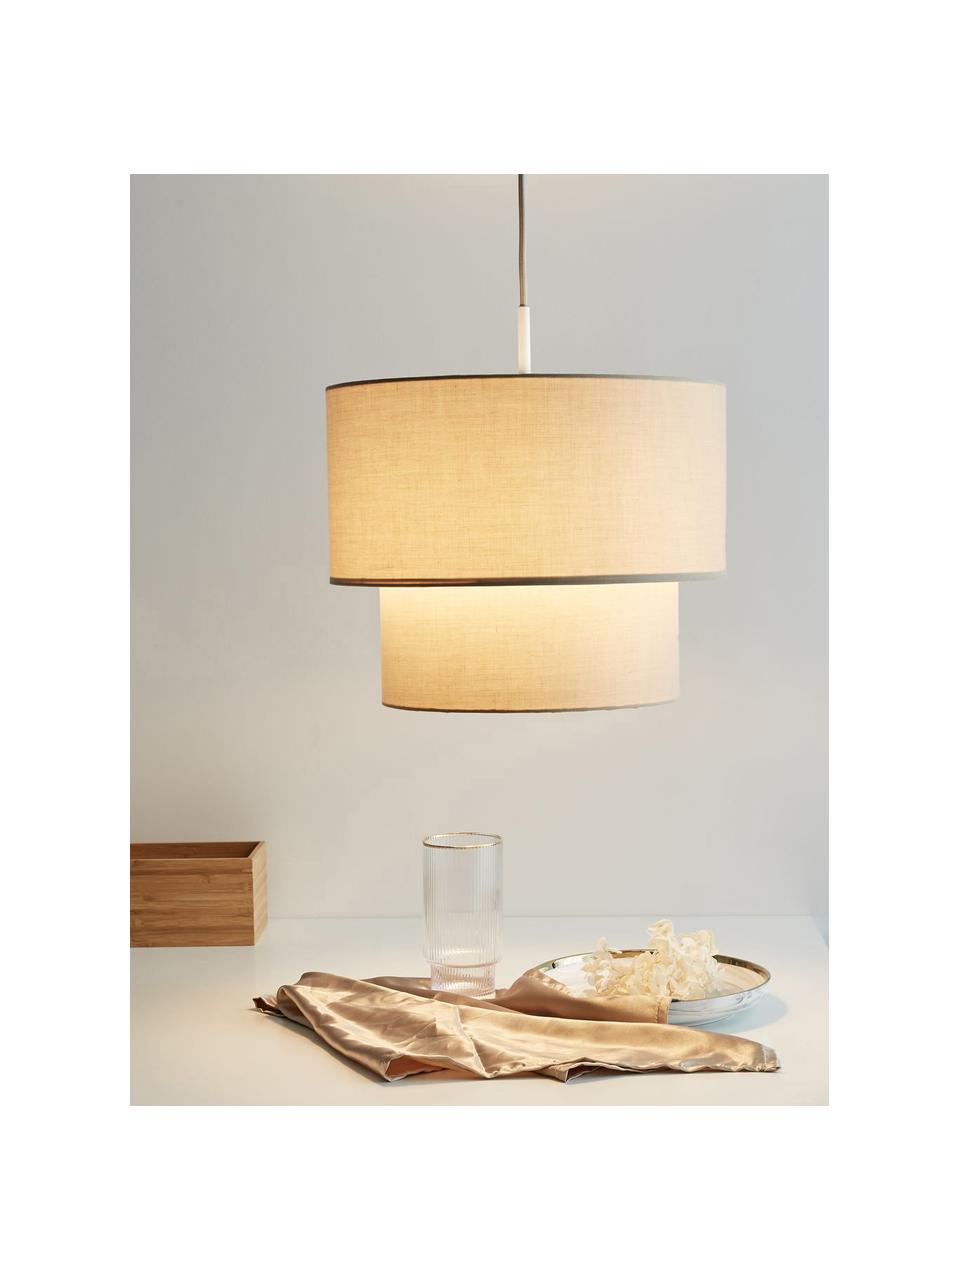 Lámpara de techo Soft Shine, Pantalla: tela, Anclaje: metal recubierto, Cable: cubierto en tela, Beige, Ø 32 x Al 25 cm